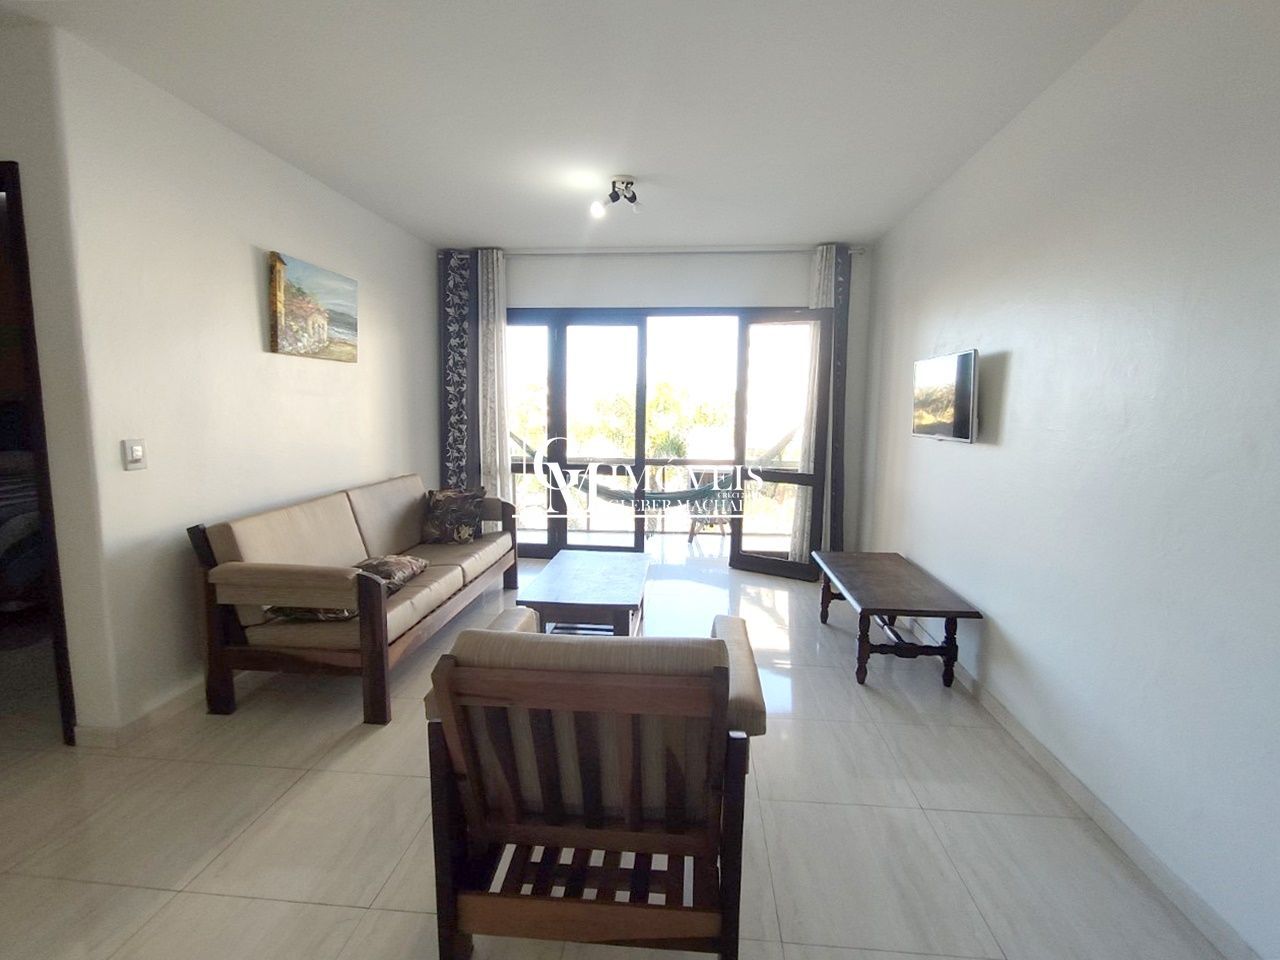 Apartamento com 2 dormitório na Praia Grande Torres RS